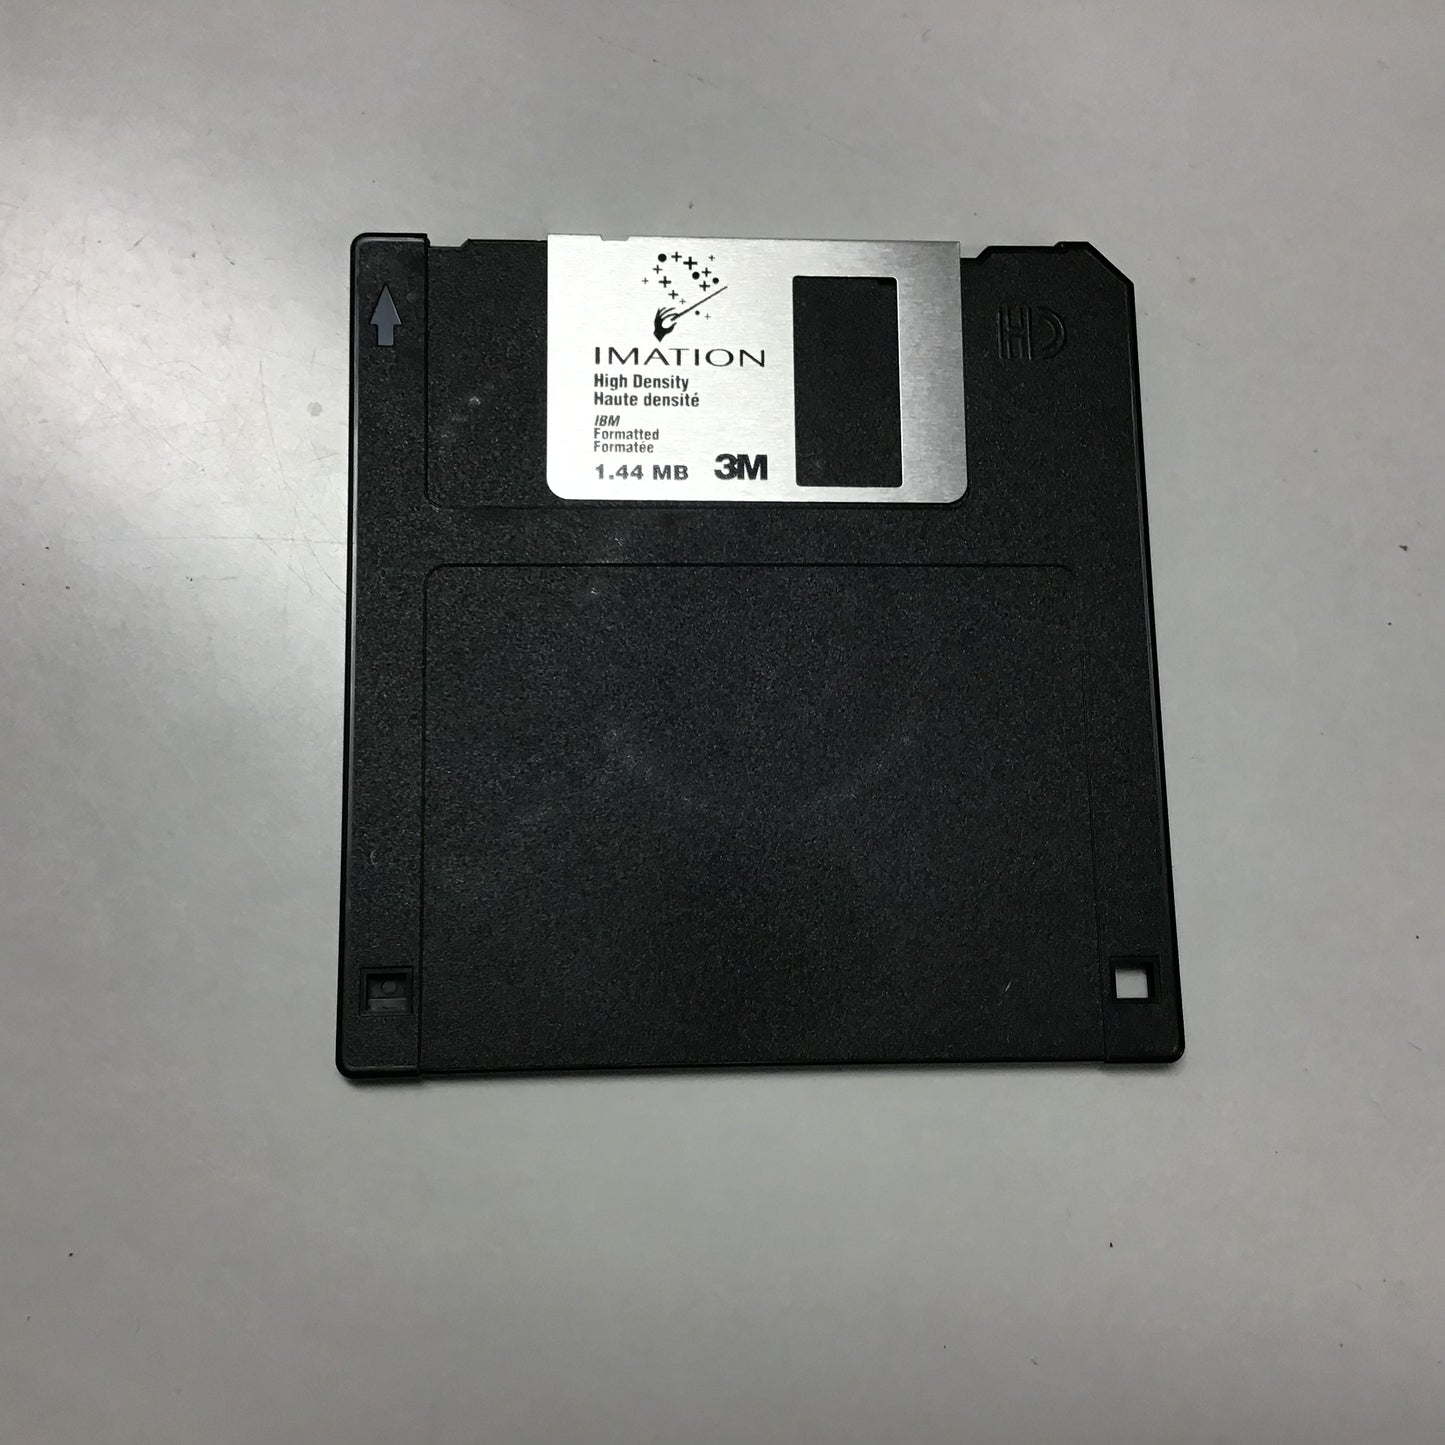 Pack of 7 Floppy Disks